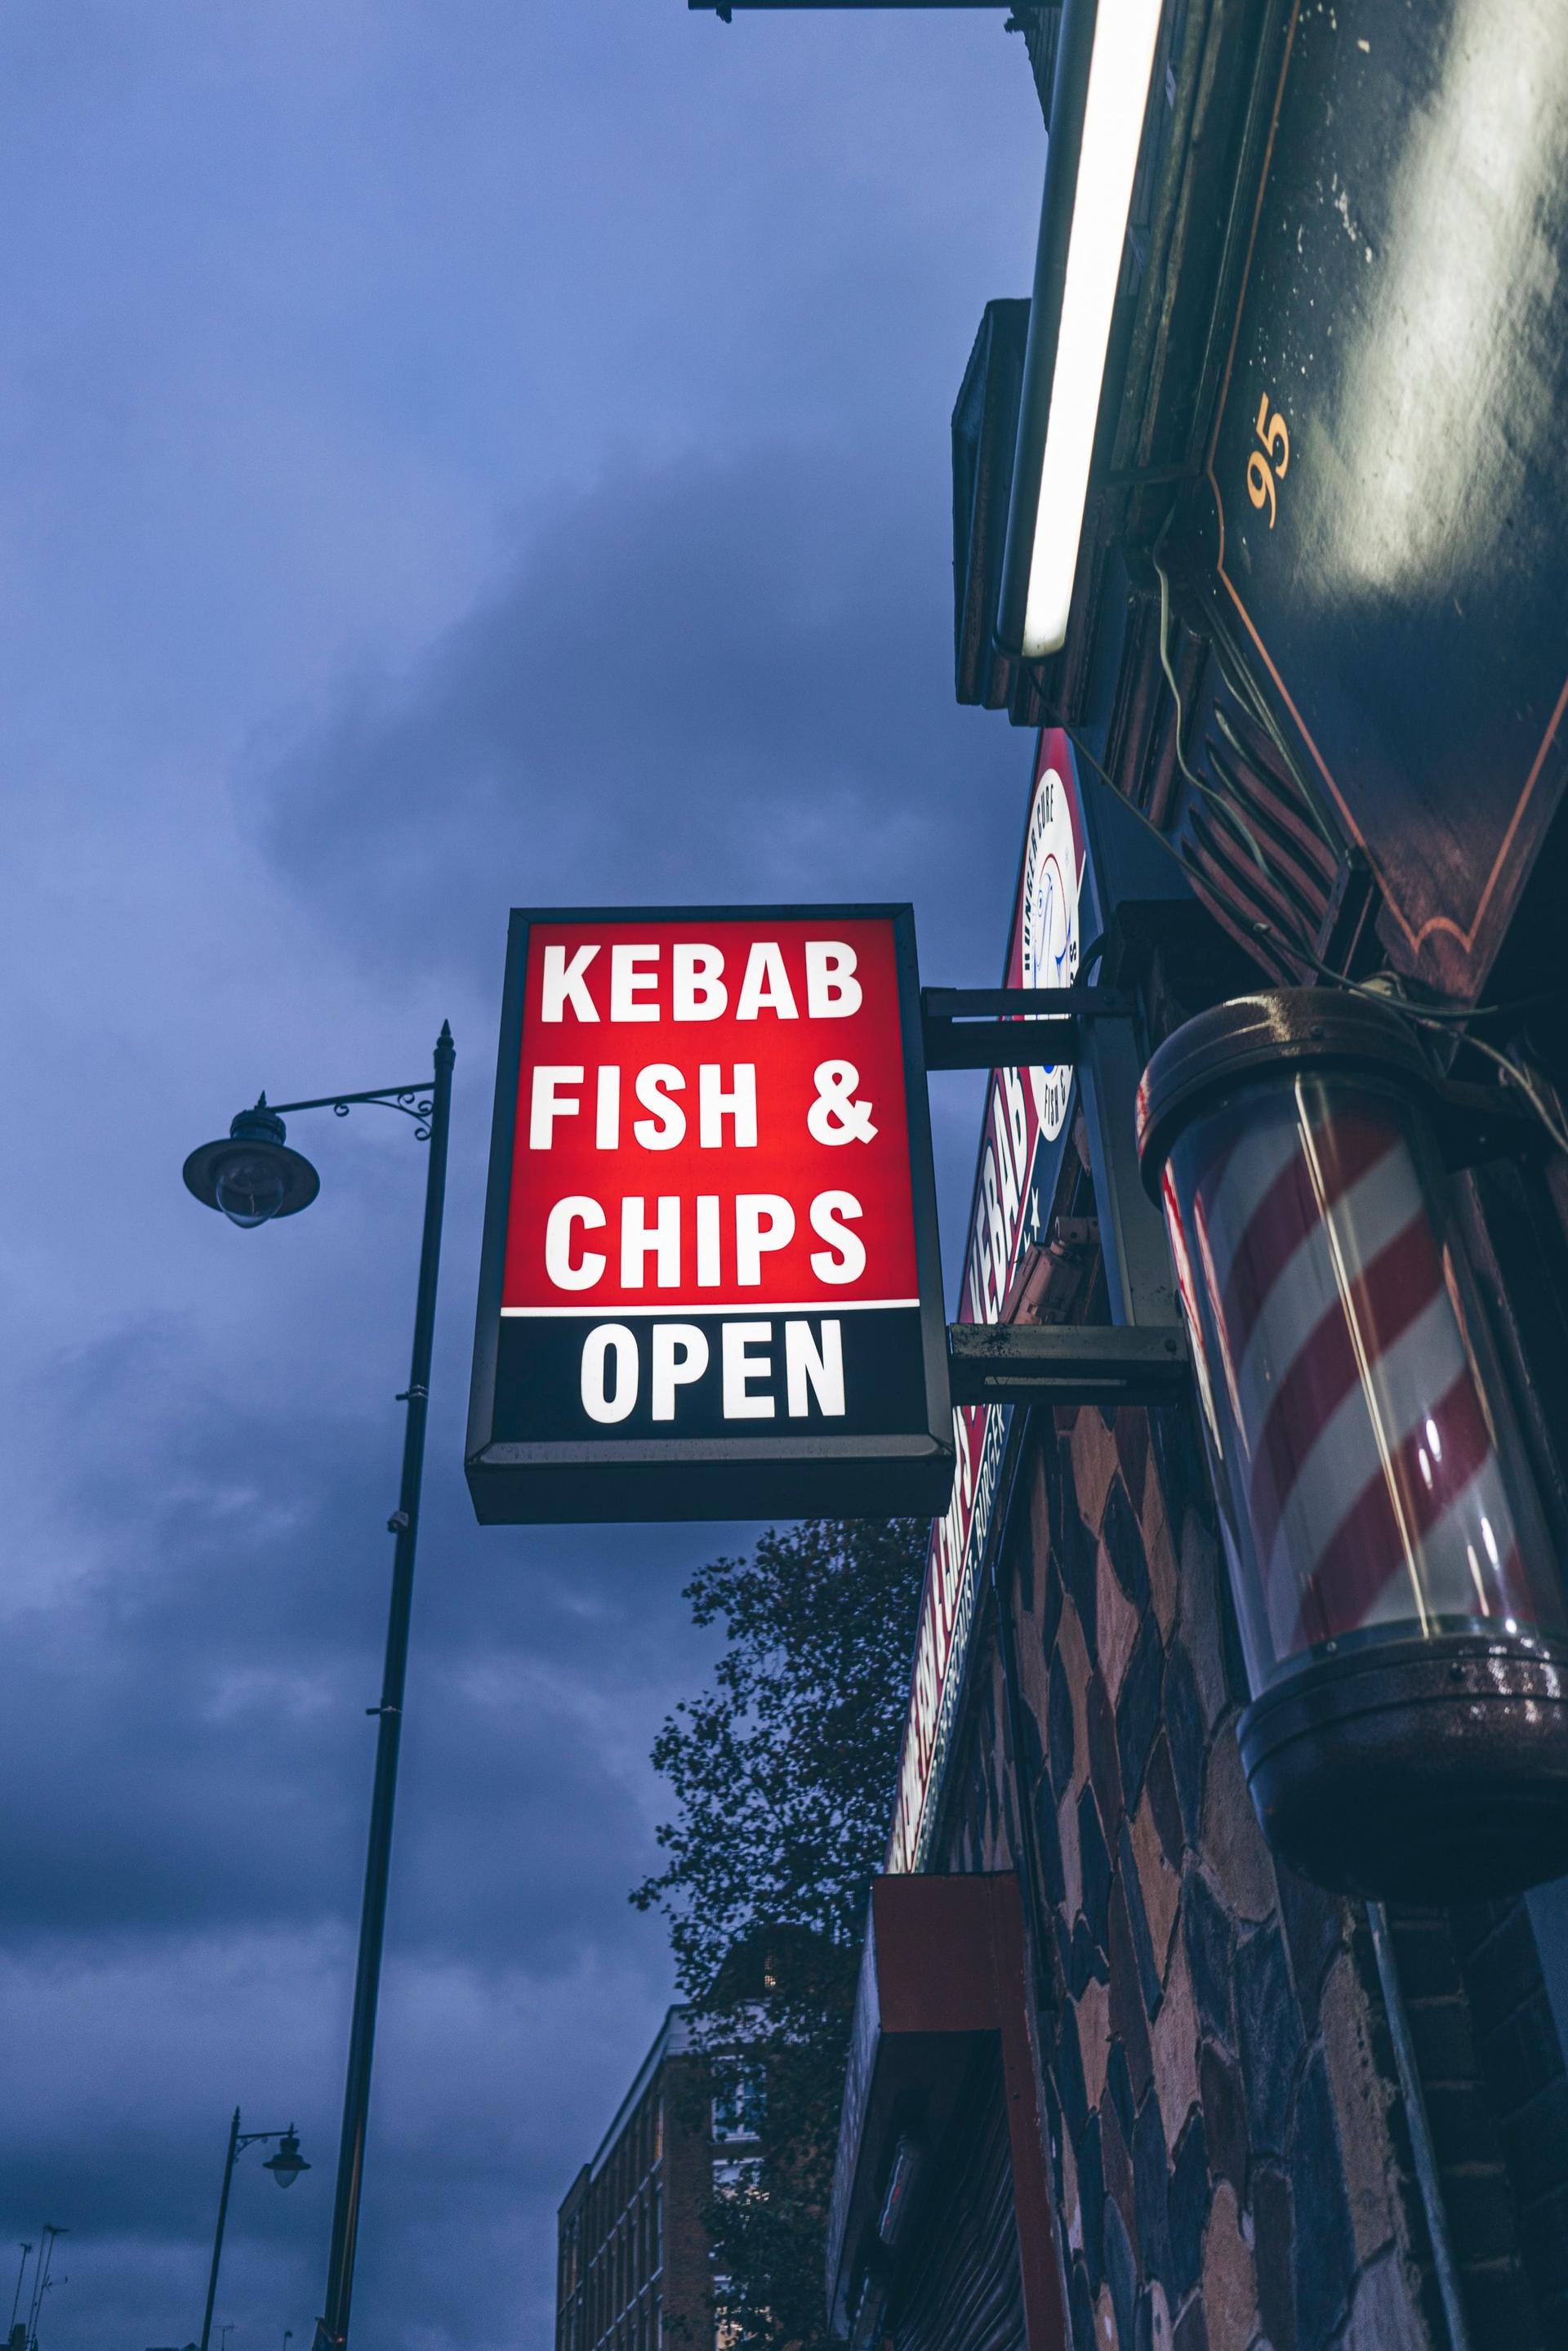 A sign stating Kebab Fish & Chips